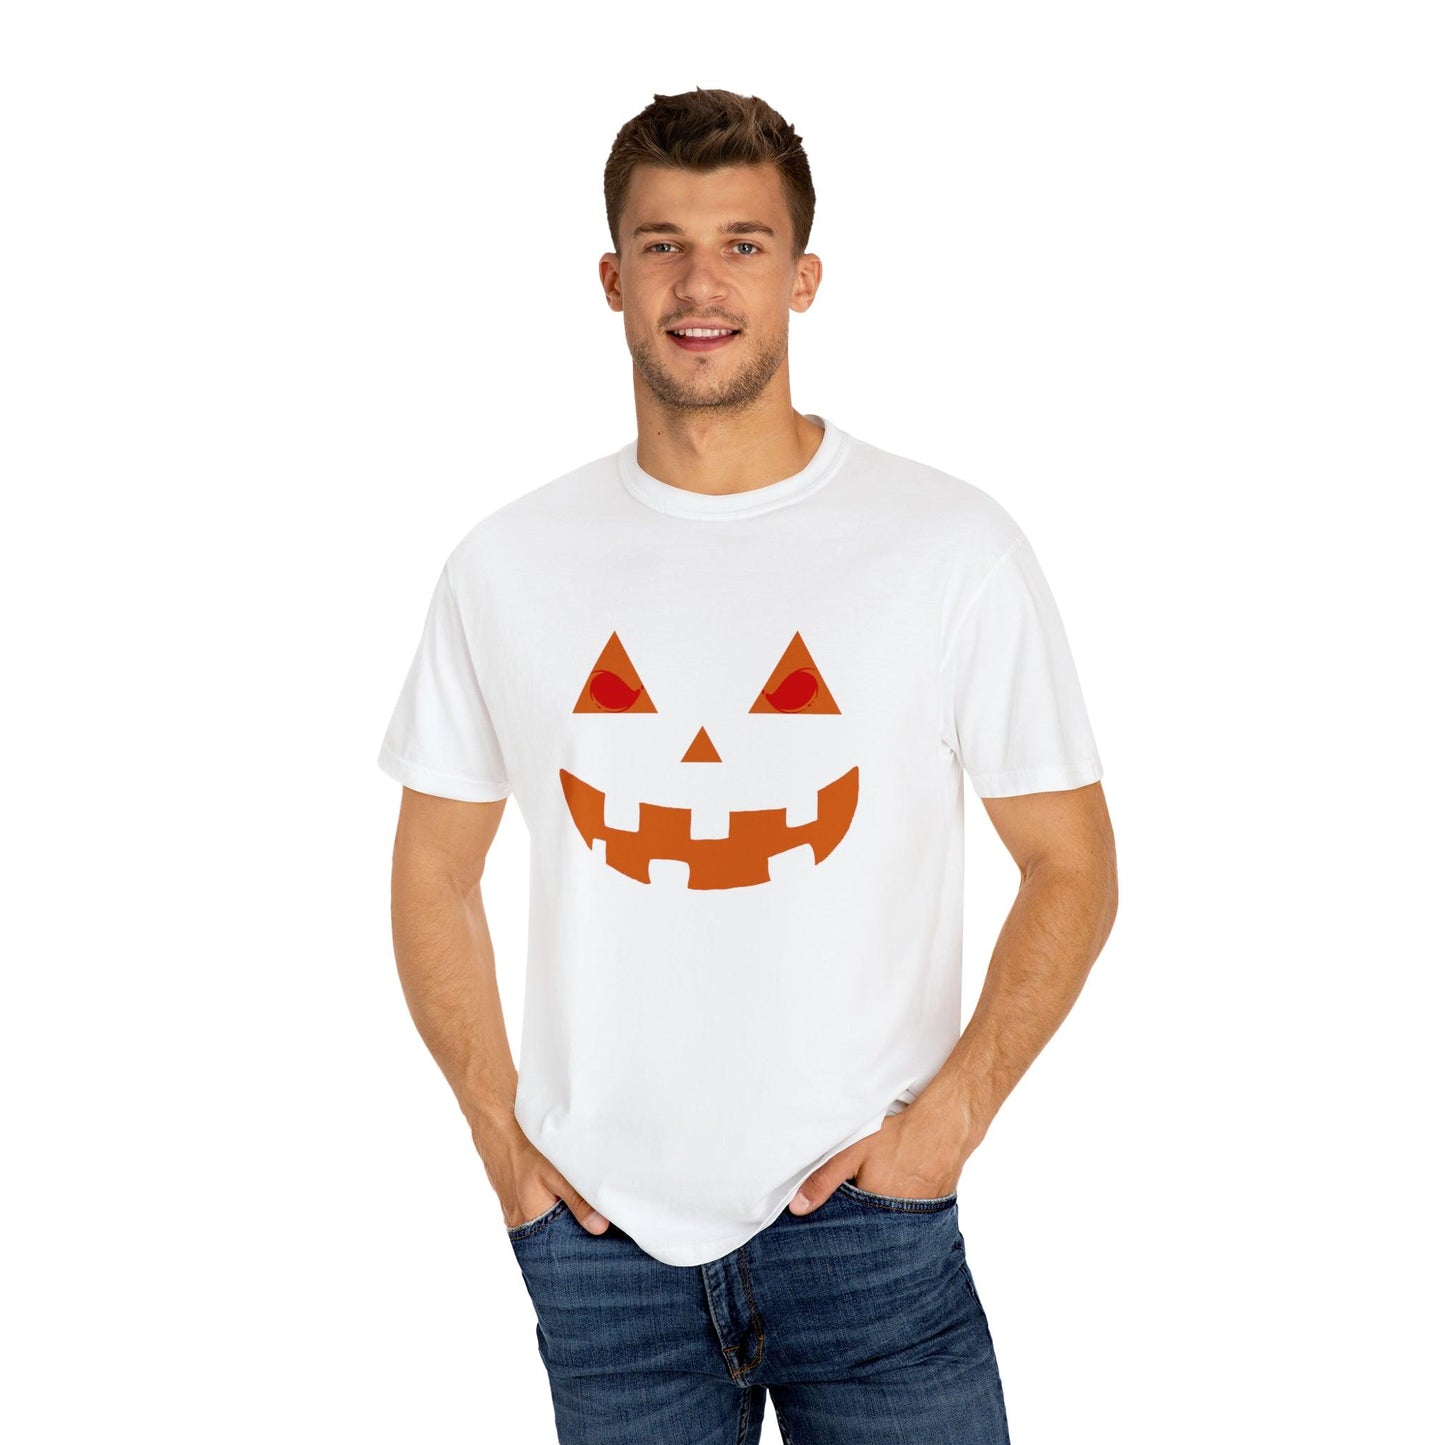 Cute Halloween Pumpkin Faces Scary Faces, Pumpkin Silhouette, Vintage Shirt Halloween Shirt Pumpkin Face Halloween Costume Comfort Colors